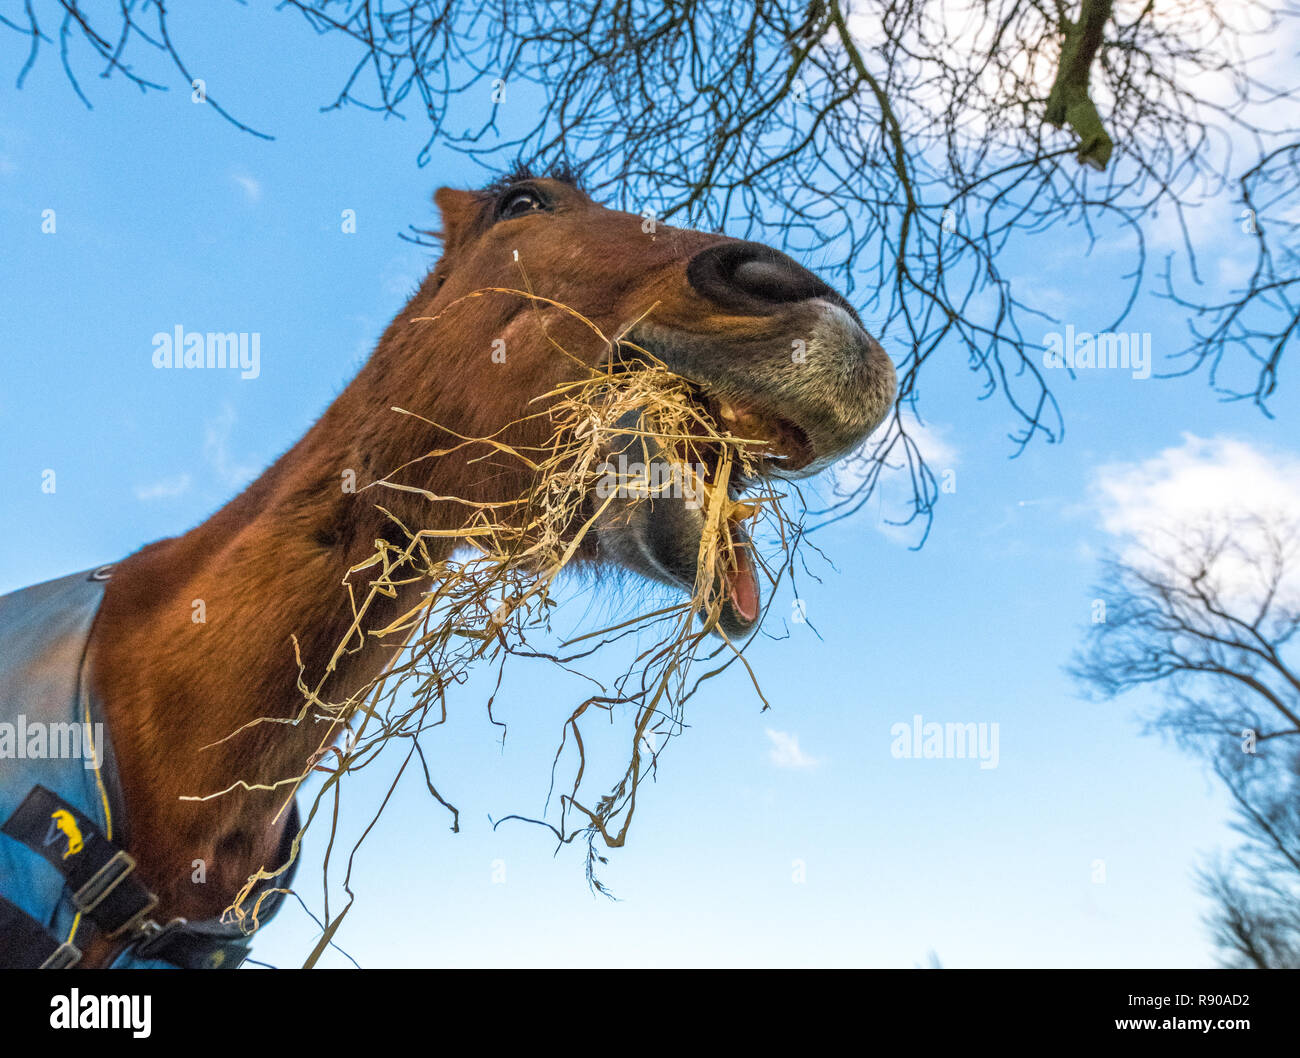 Verzerrtes Bild von einem Pferd essen Heu trägt einen blauen Wintermantel. Stockfoto